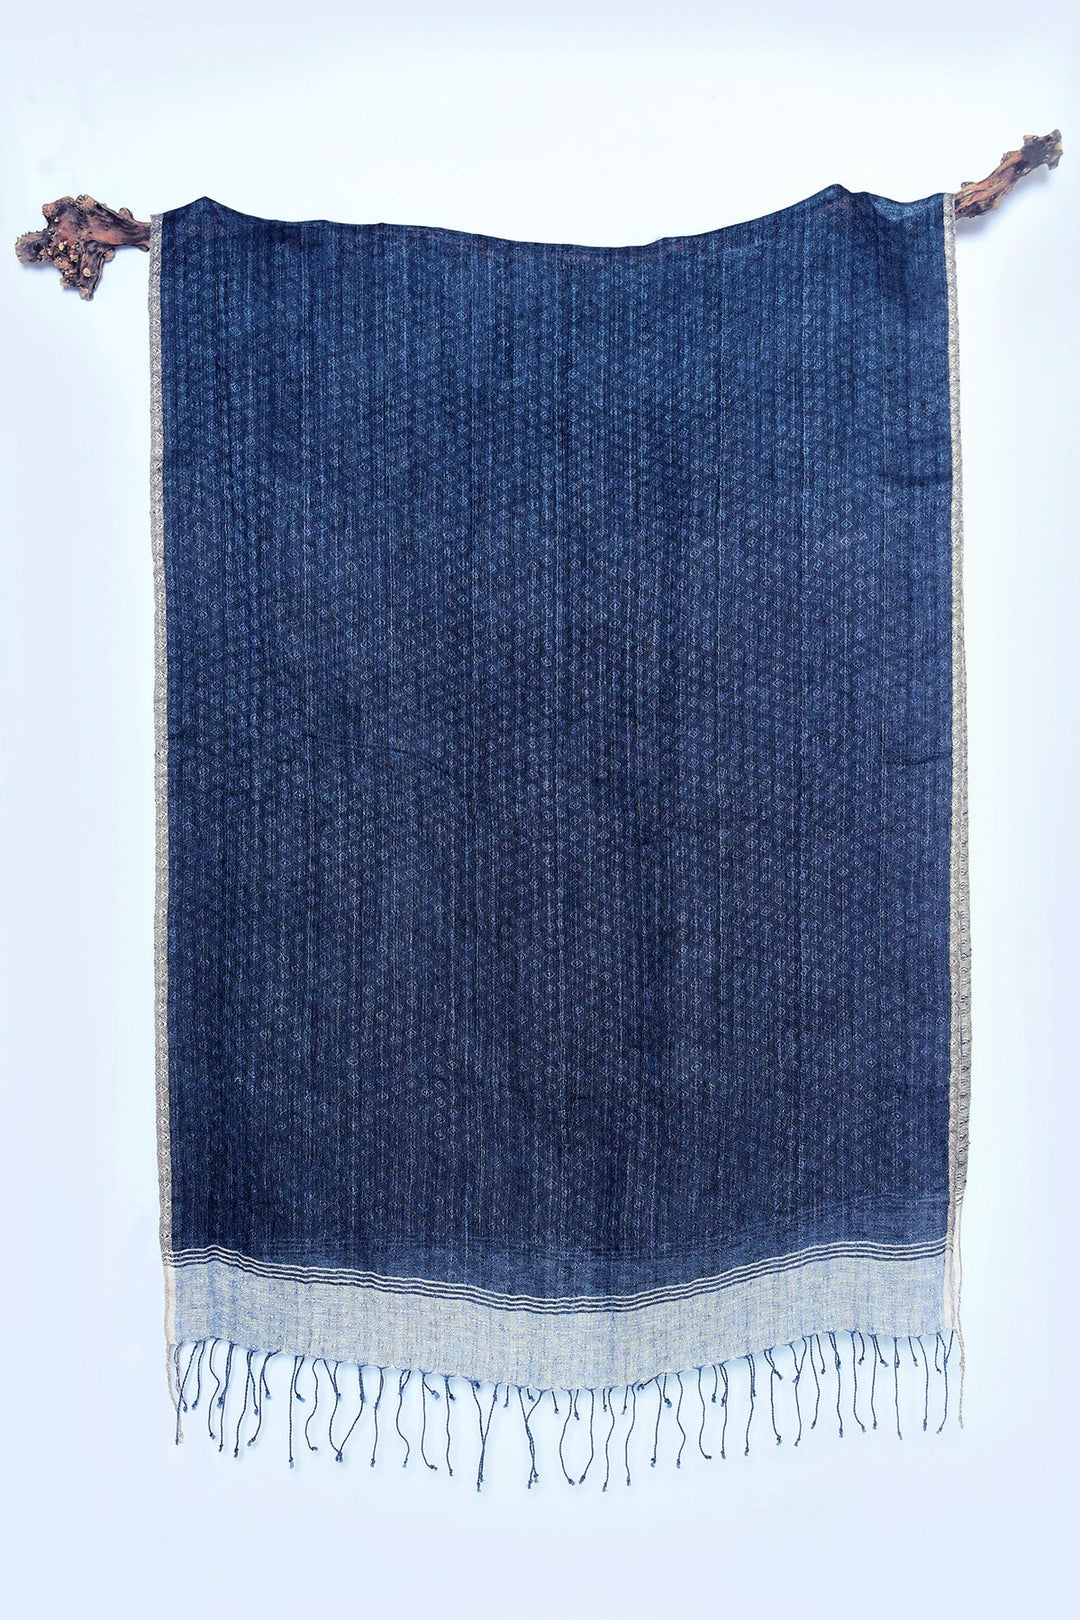 Black Linen Stole with Jacquard Detail | Blue Log Handwoven Linen Stole - Black